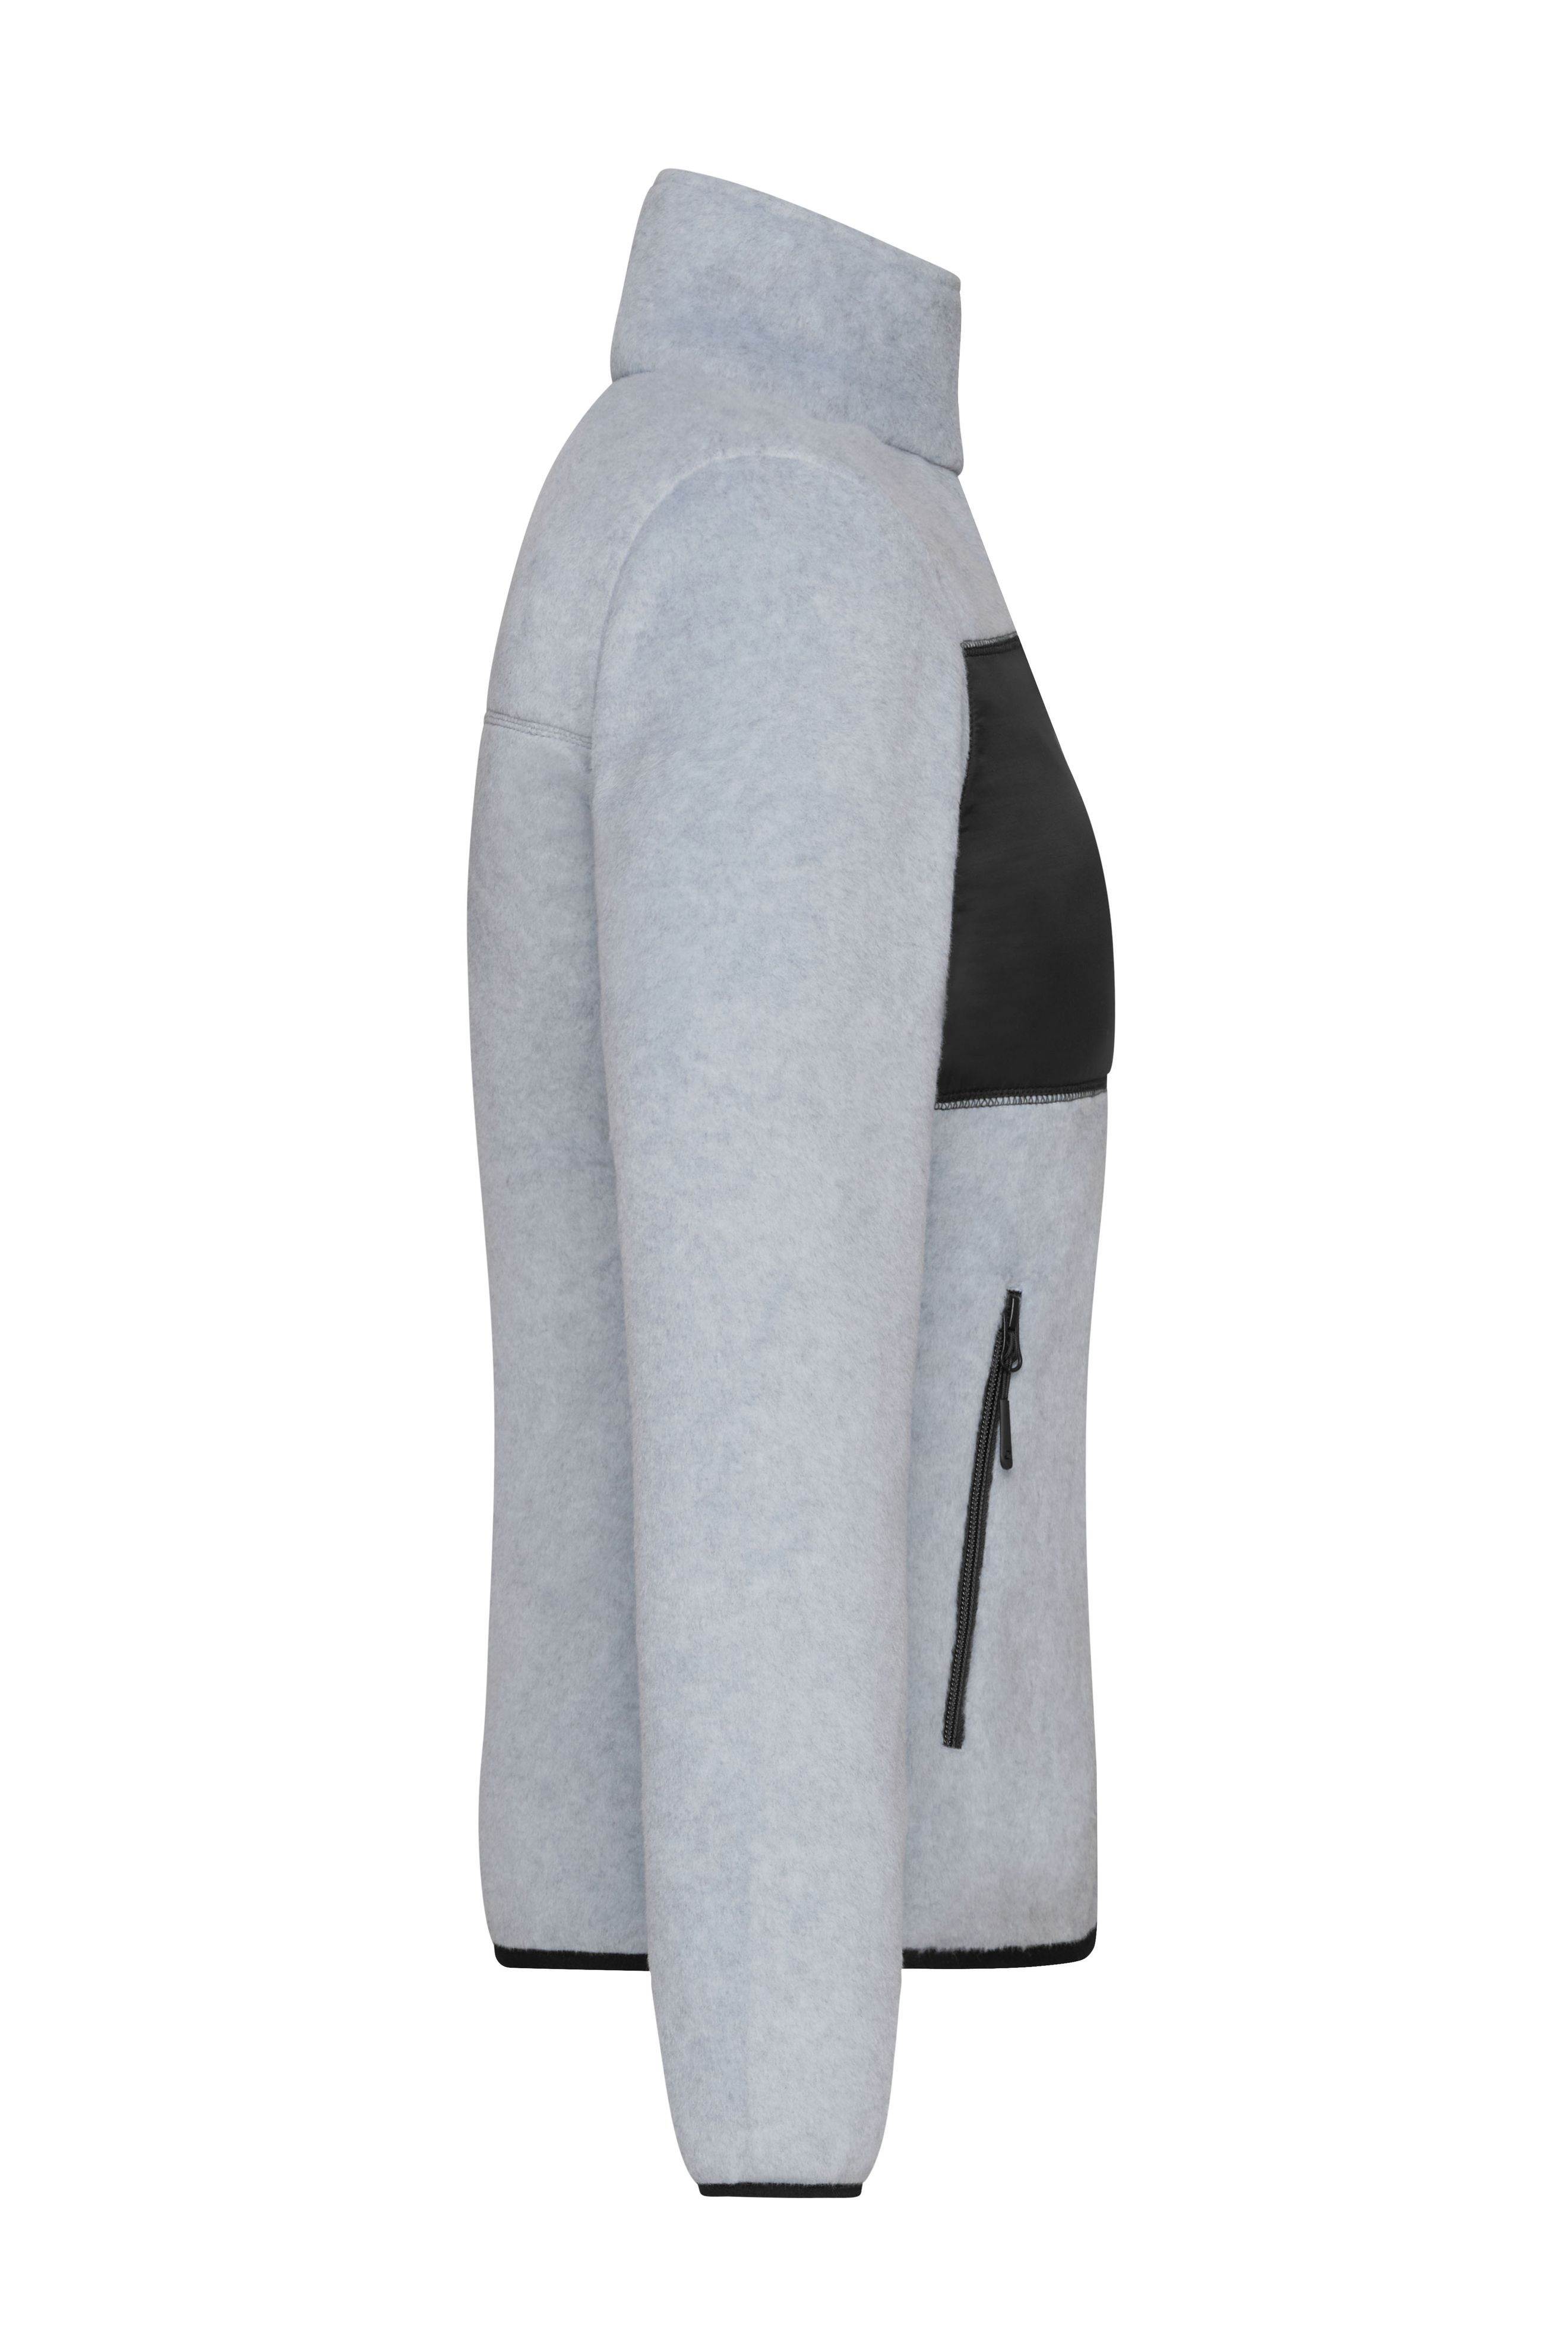 Ladies' Fleece Jacket JN1311 Fleecejacke im Materialmix